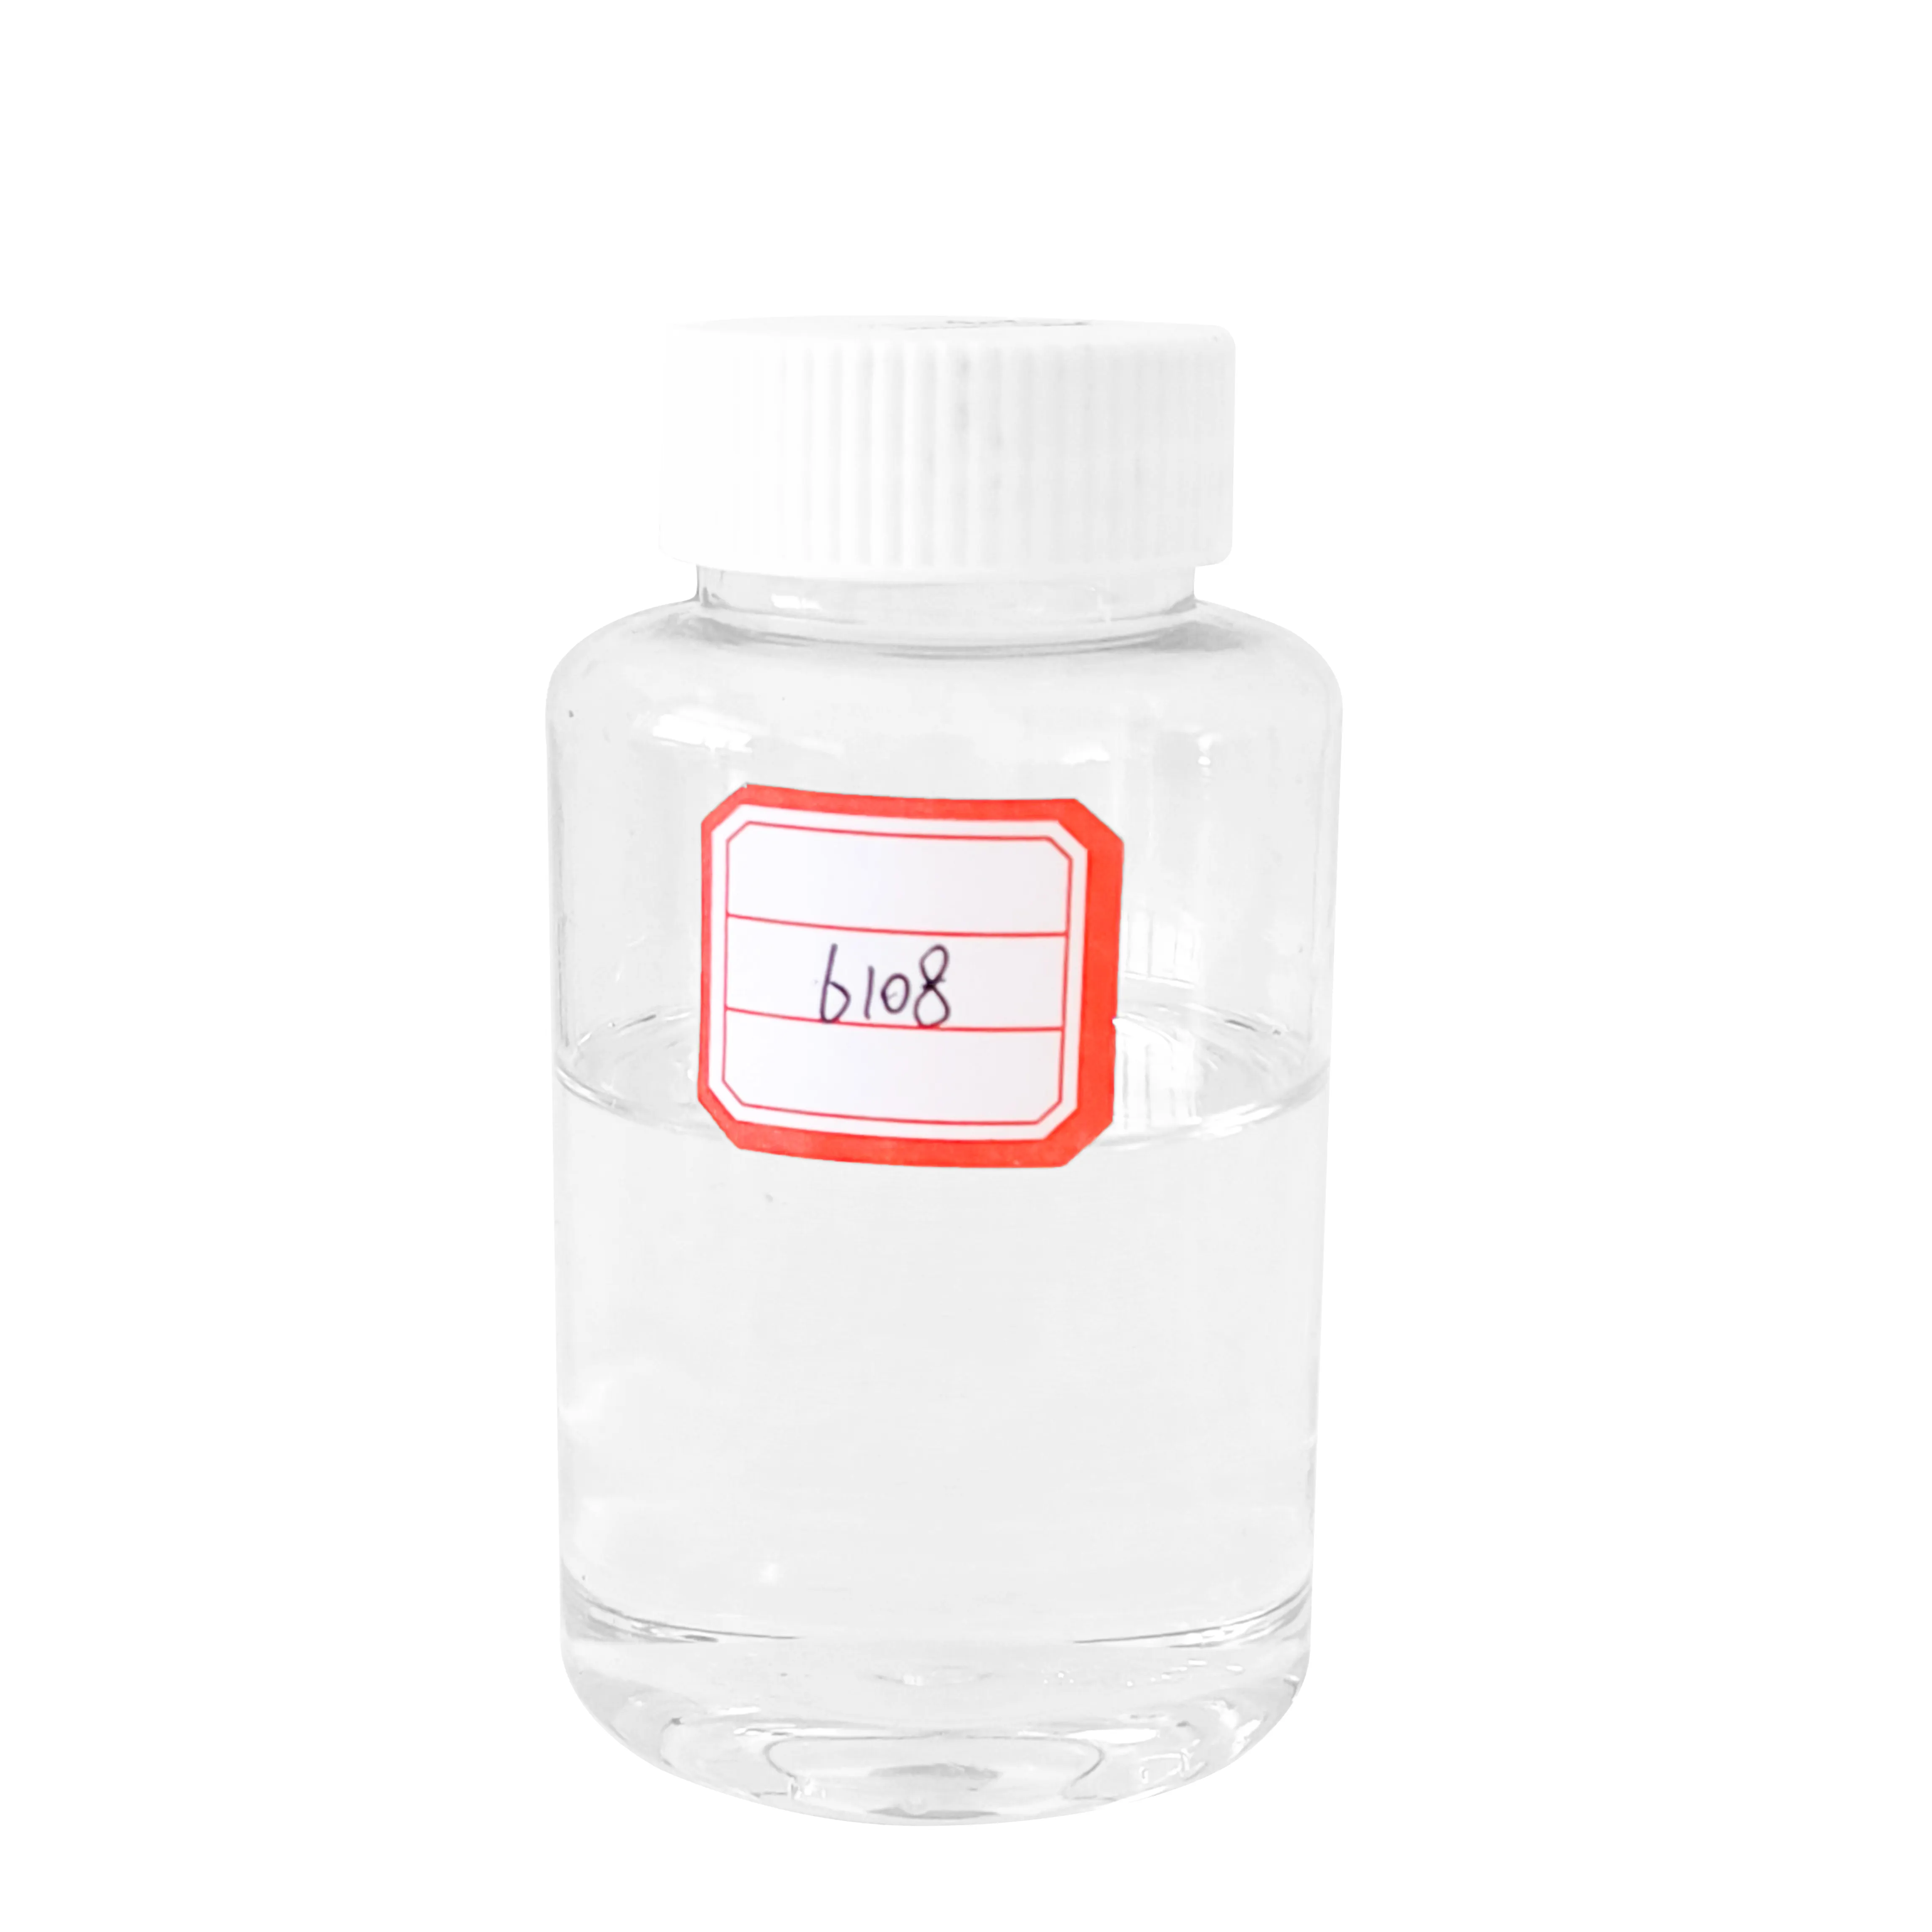 Adesivo per agente indurente in resina epossidica liquida a bassa viscosità Hotsell HB-6108